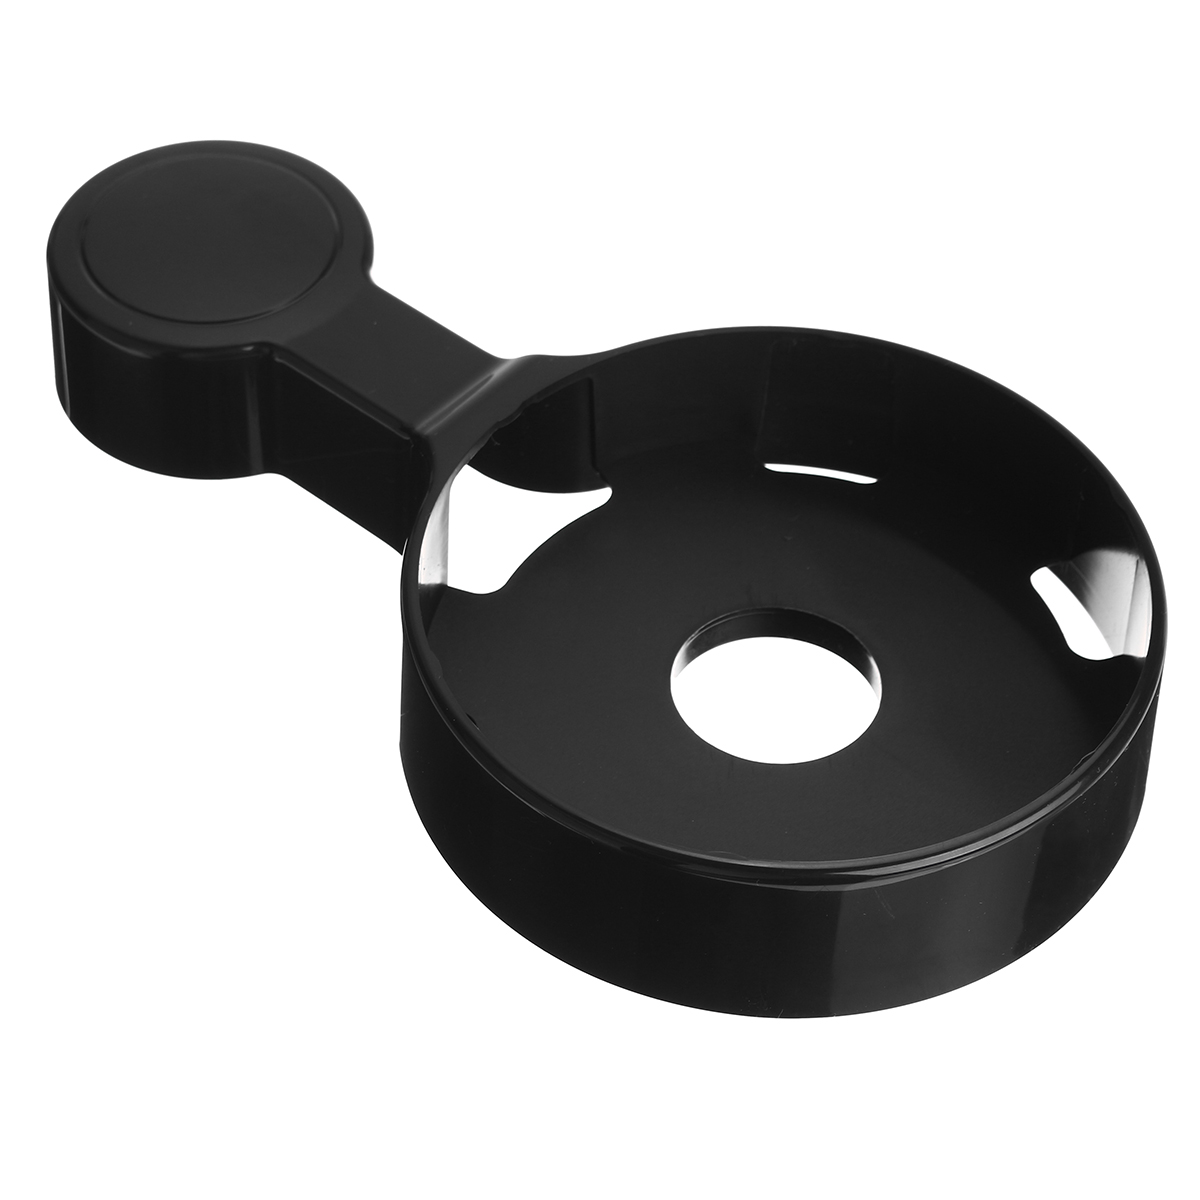 Portable-Wall-Mount-Holder-Plastic-Speaker-Stand-for-Google-Home-Speaker-1675631-7